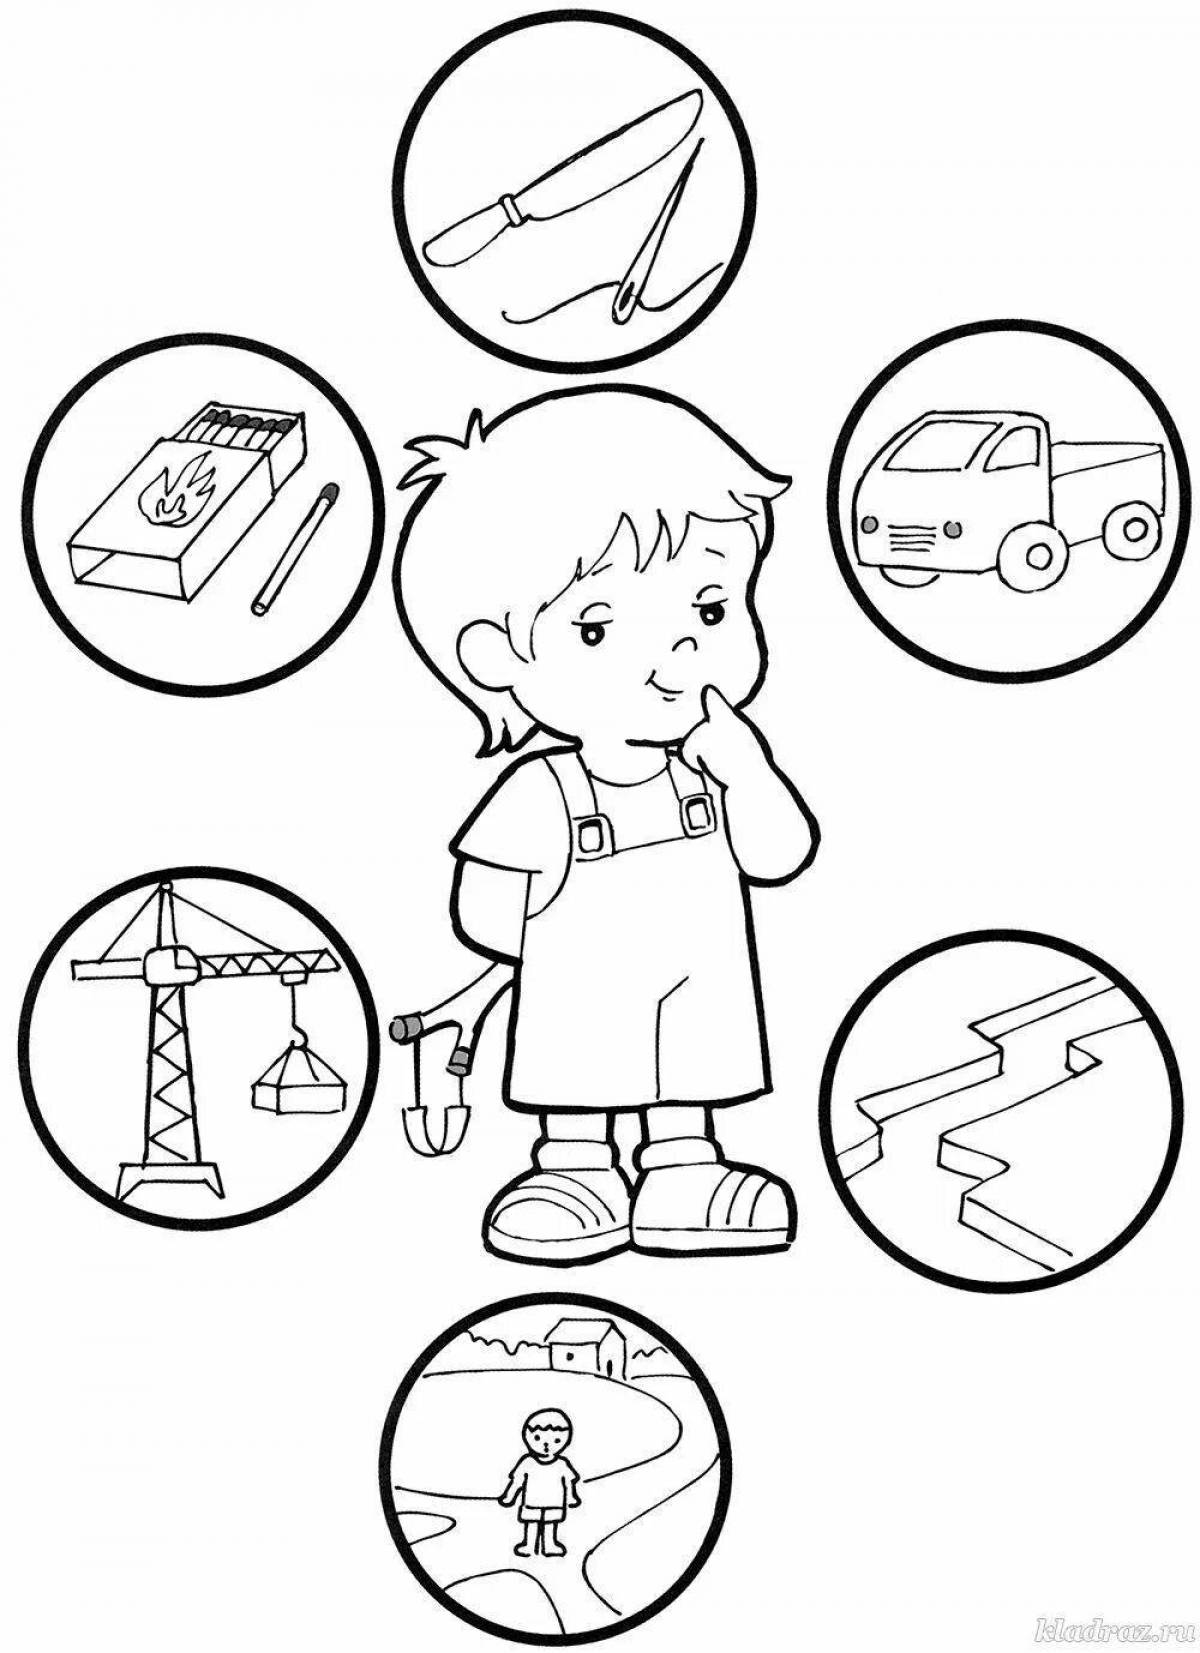 Правила поведения в детском саду #9